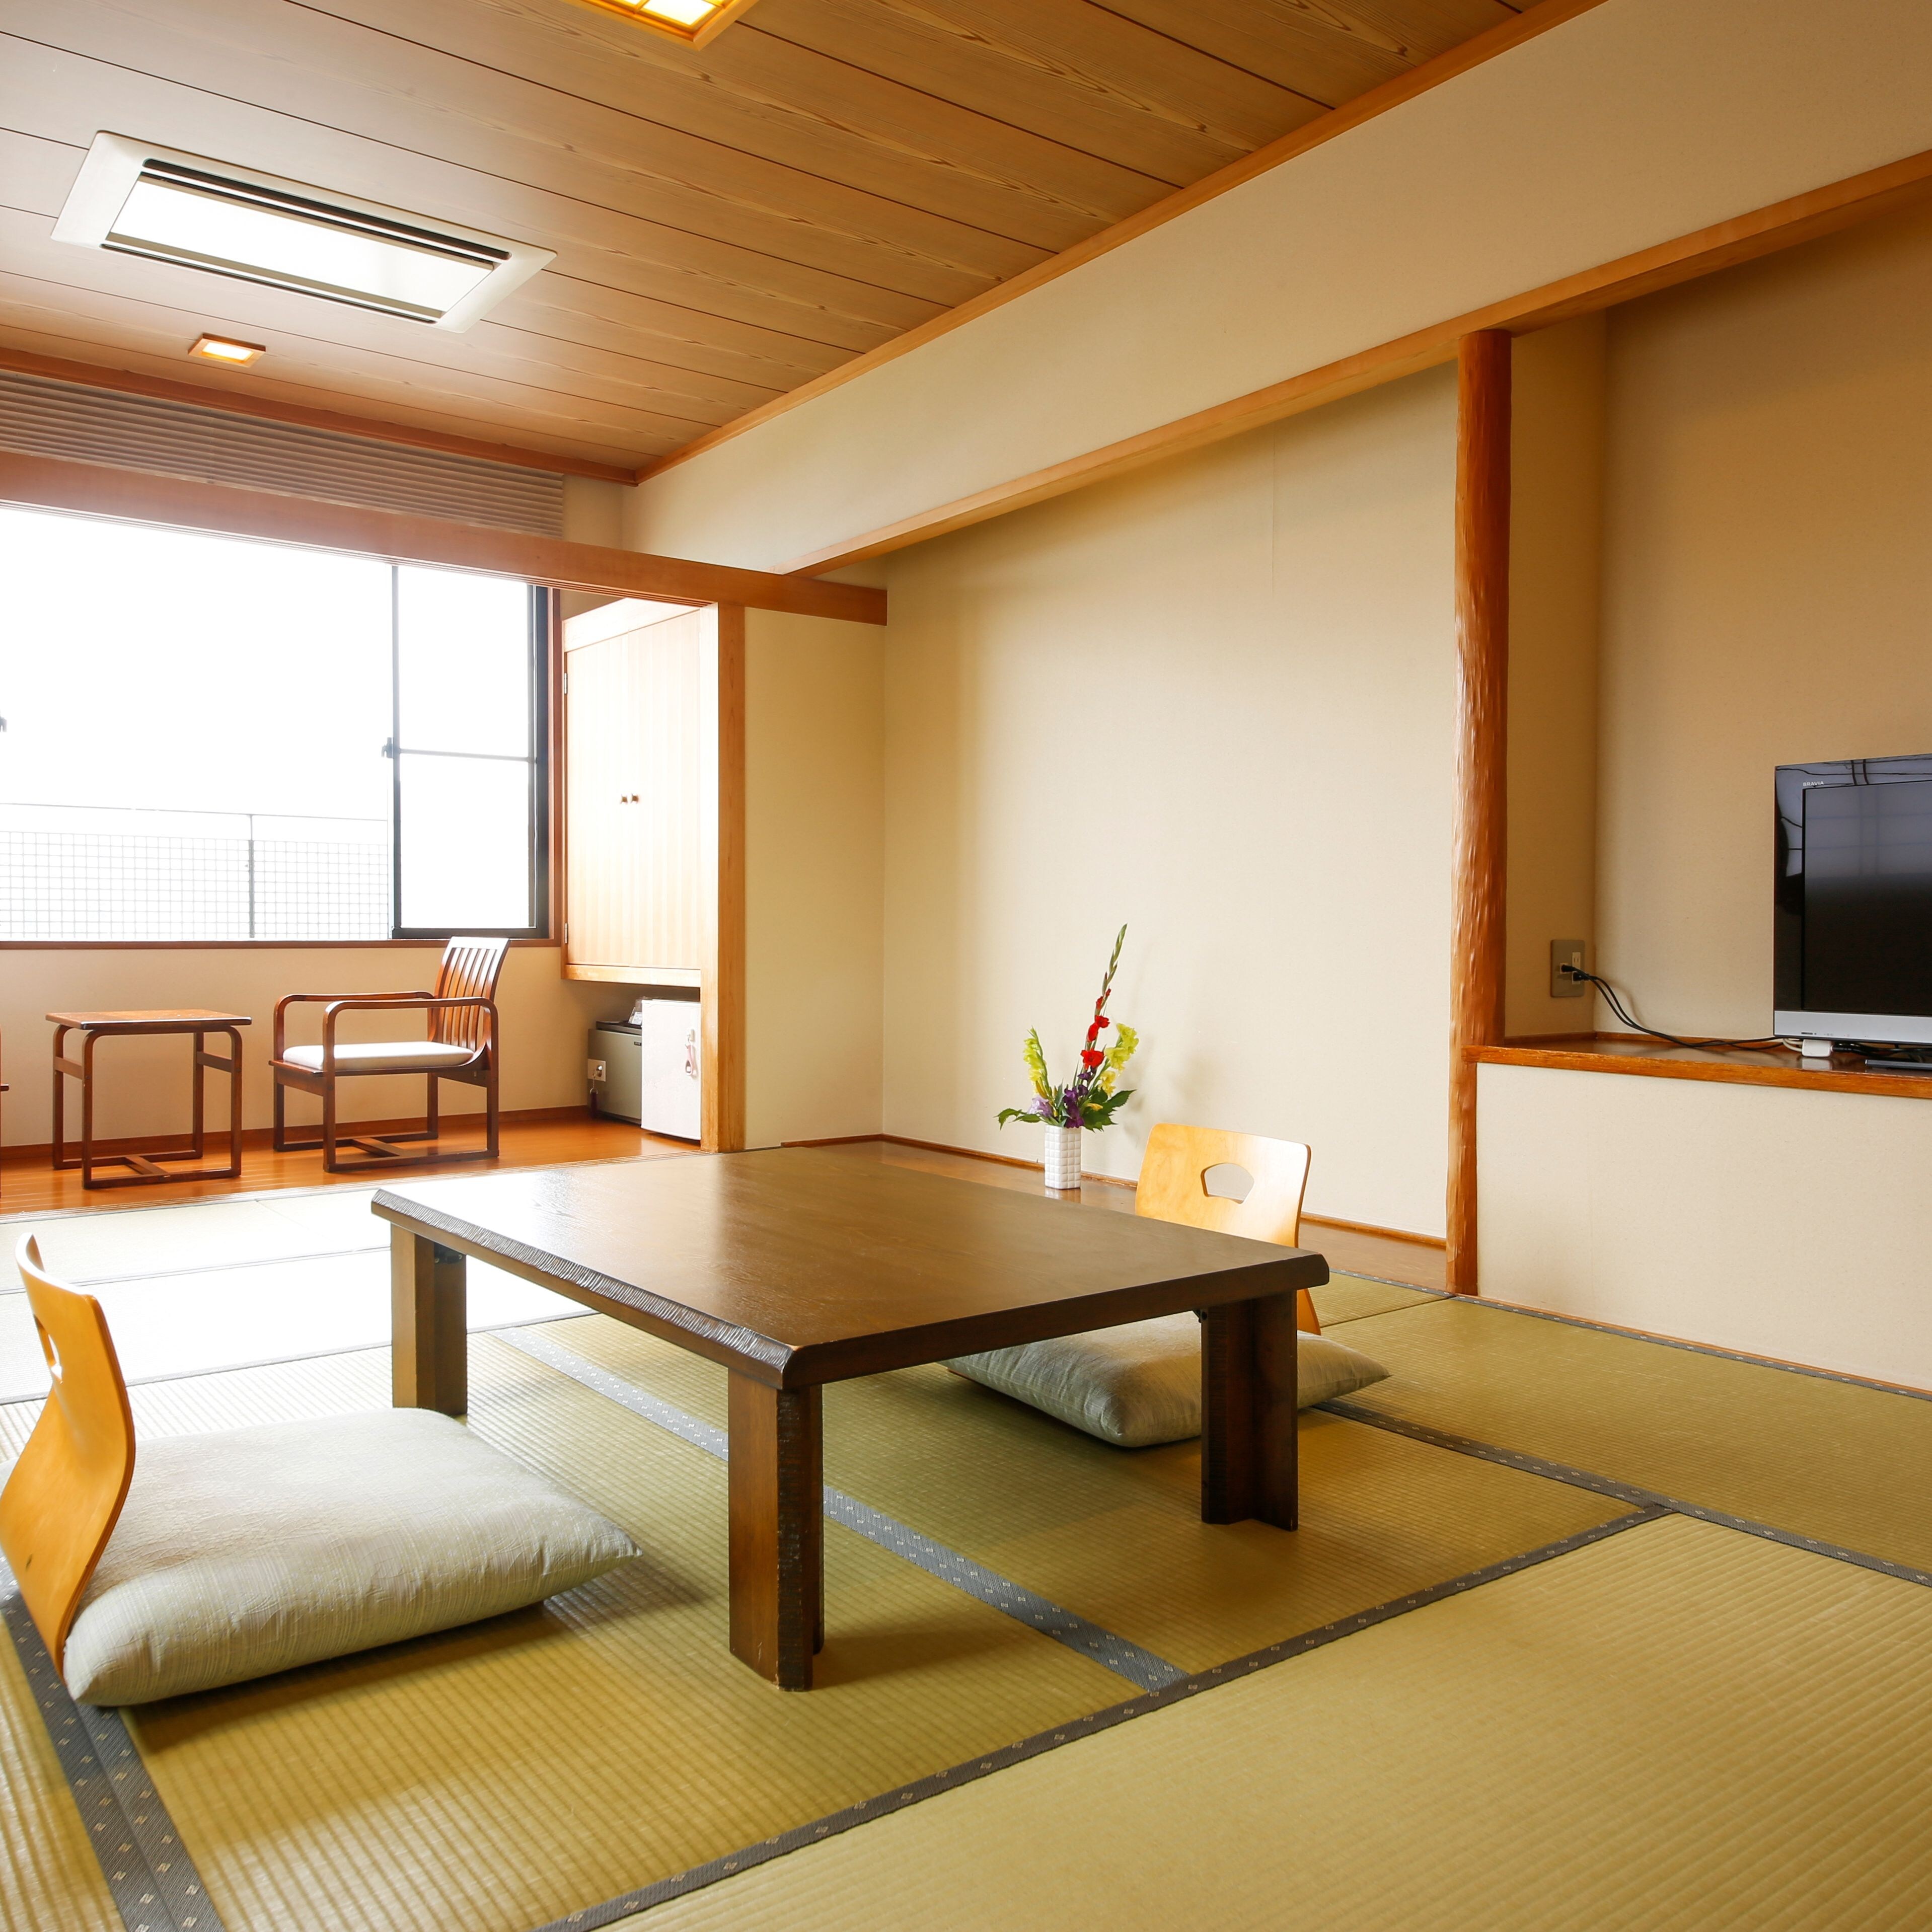 ในห้องสไตล์ญี่ปุ่นที่สะอาดและเงียบสงบ คุณจะลืมความเร่งรีบในชีวิตประจำวันและผ่อนคลายไปได้เลย